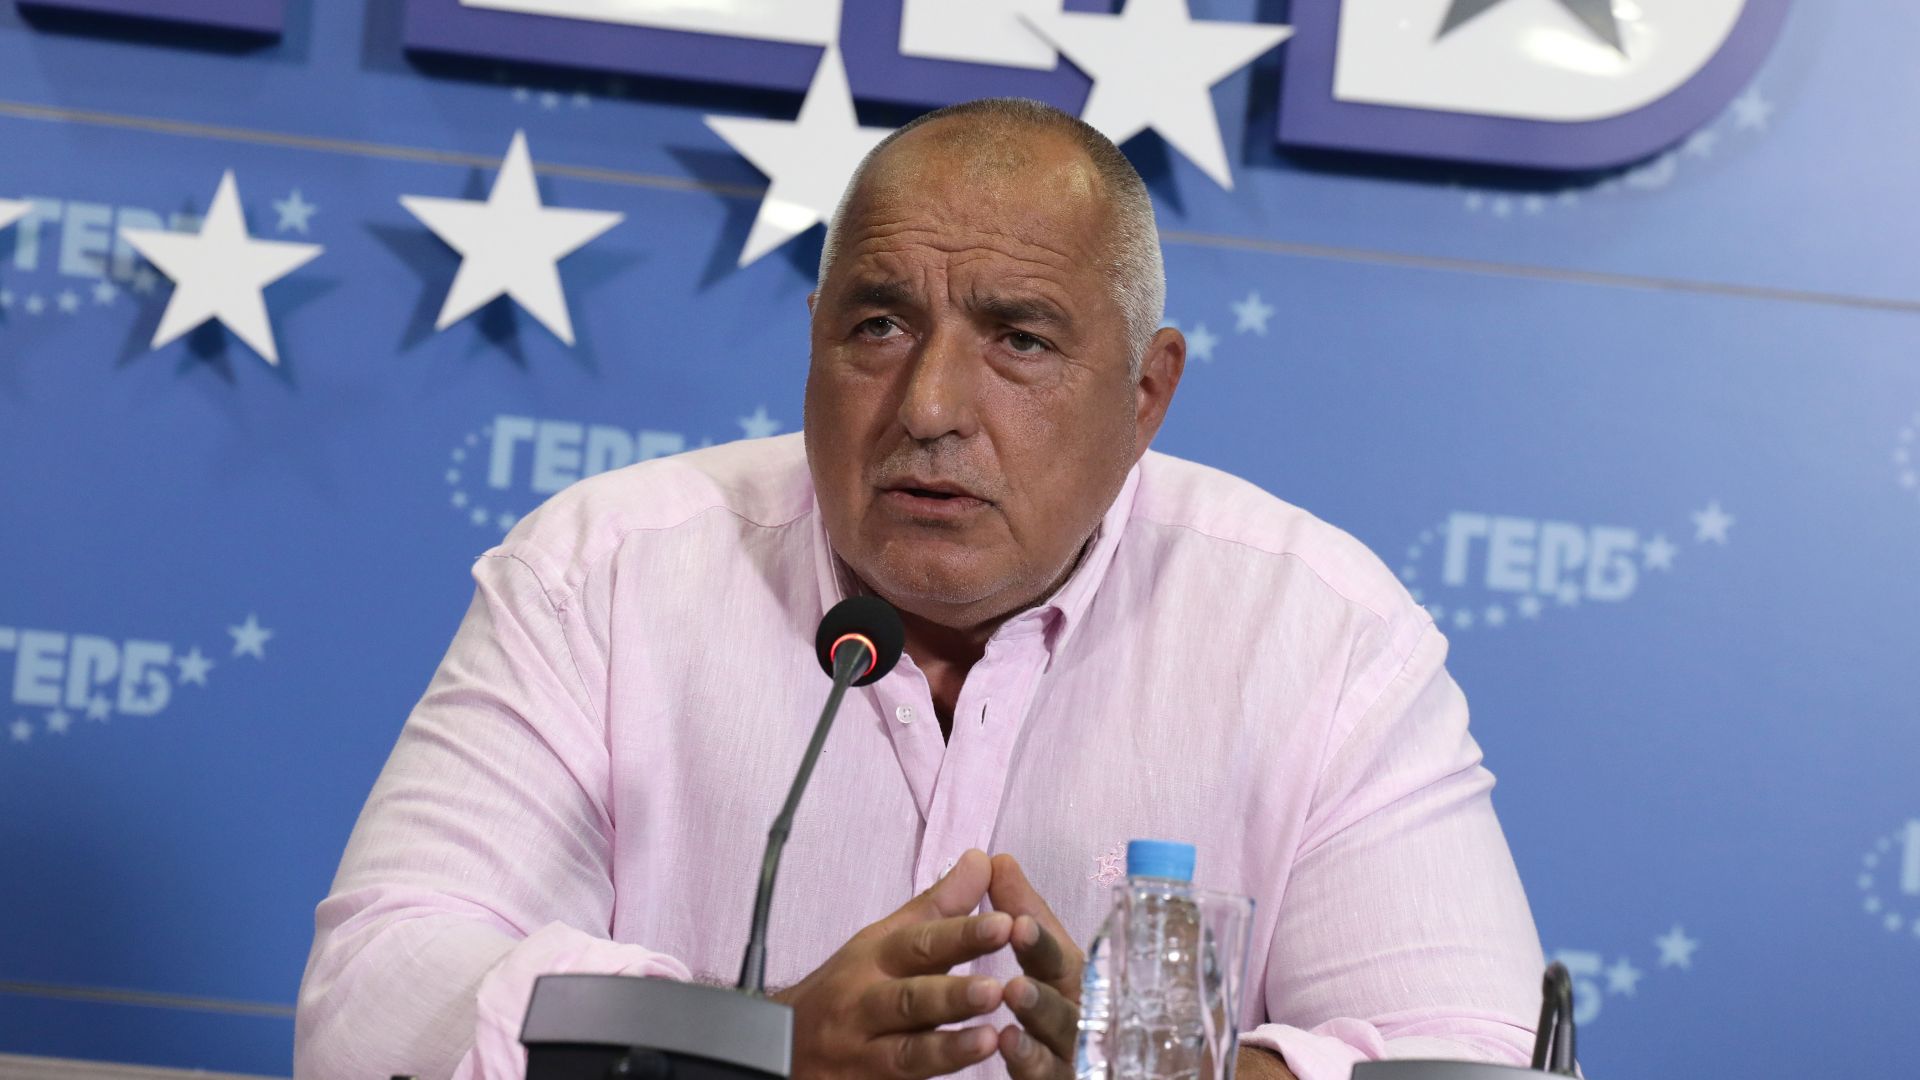 Бойко Борисов обвини Румен Радев, че потопил нацията в омраза и хаос